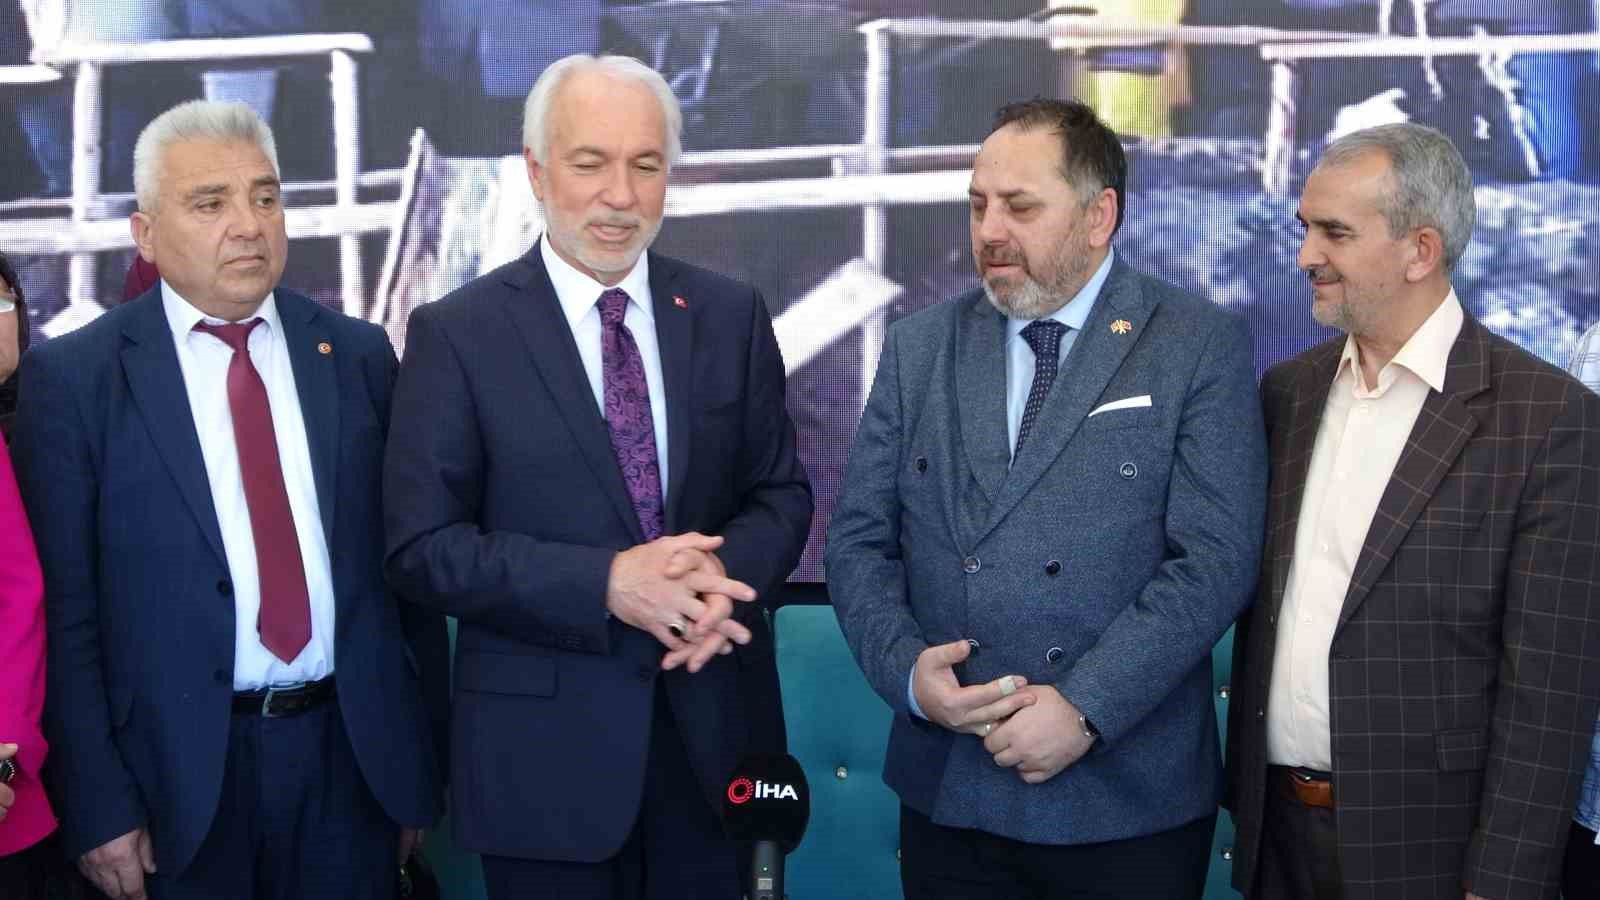 BBP, Kütahya’da AK Parti’nin adayı Kamil Saraçoğlu’nu destekleyecek
